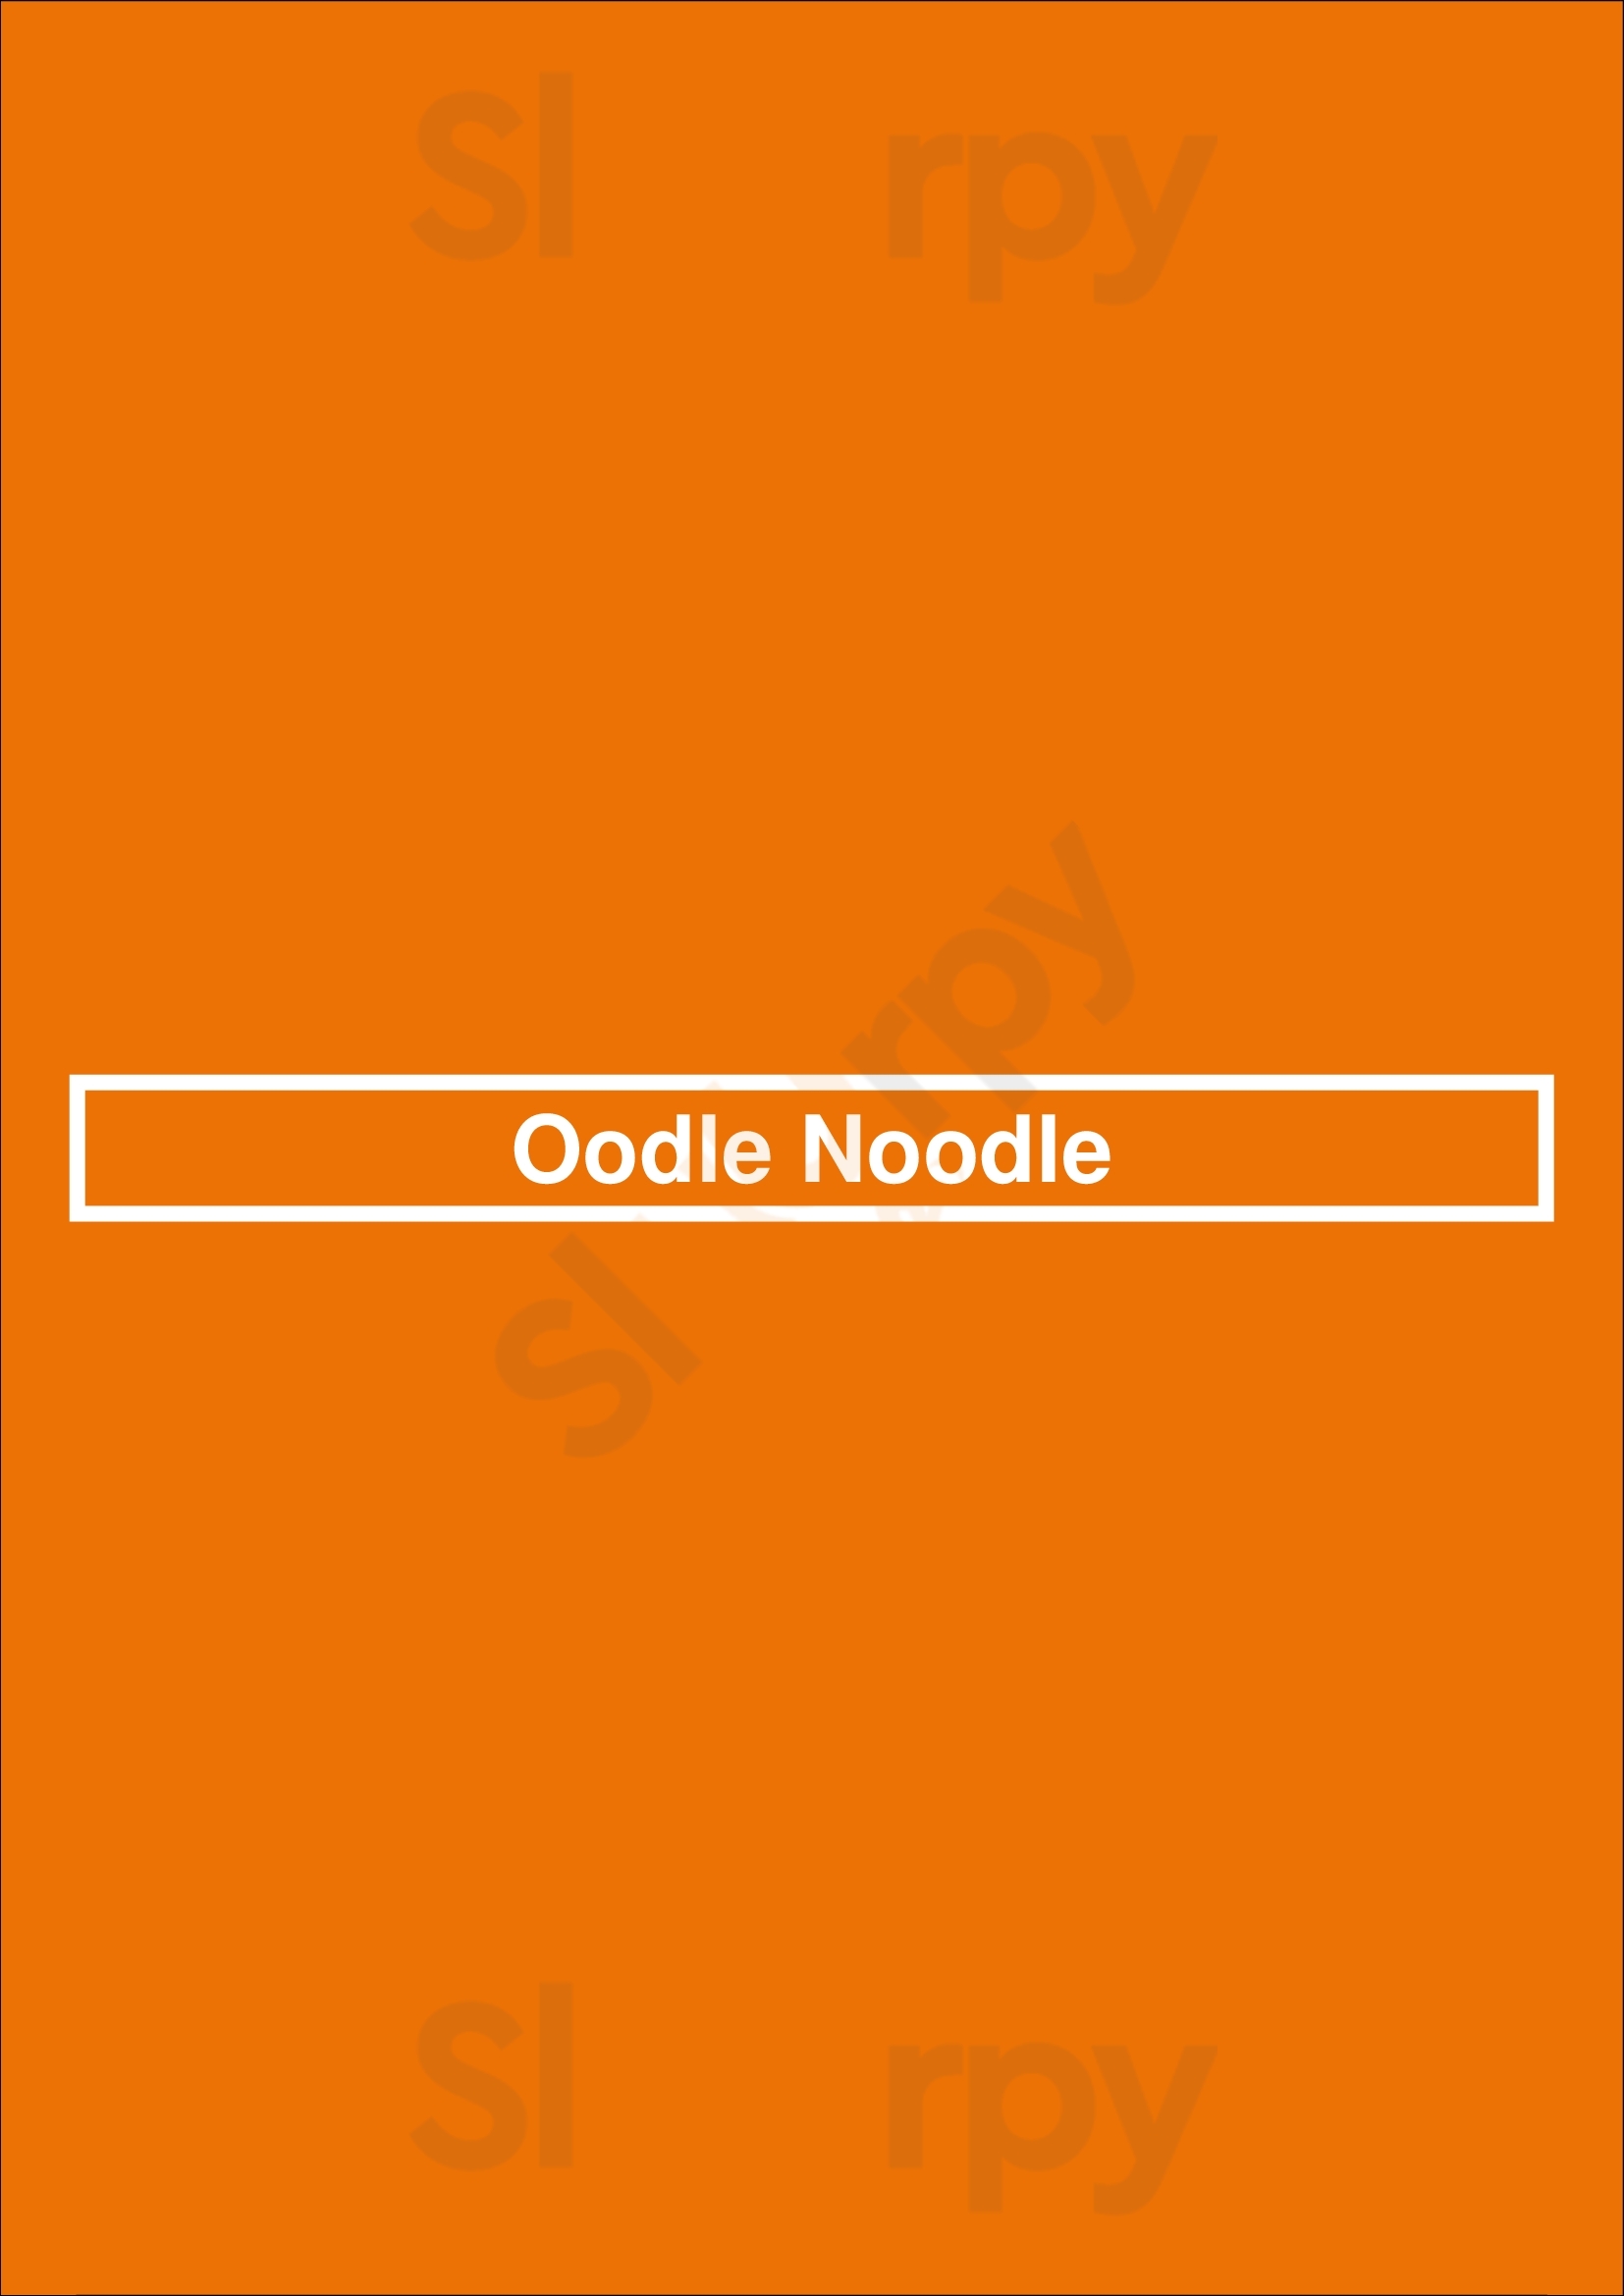 Oodle Noodle Edmonton Menu - 1